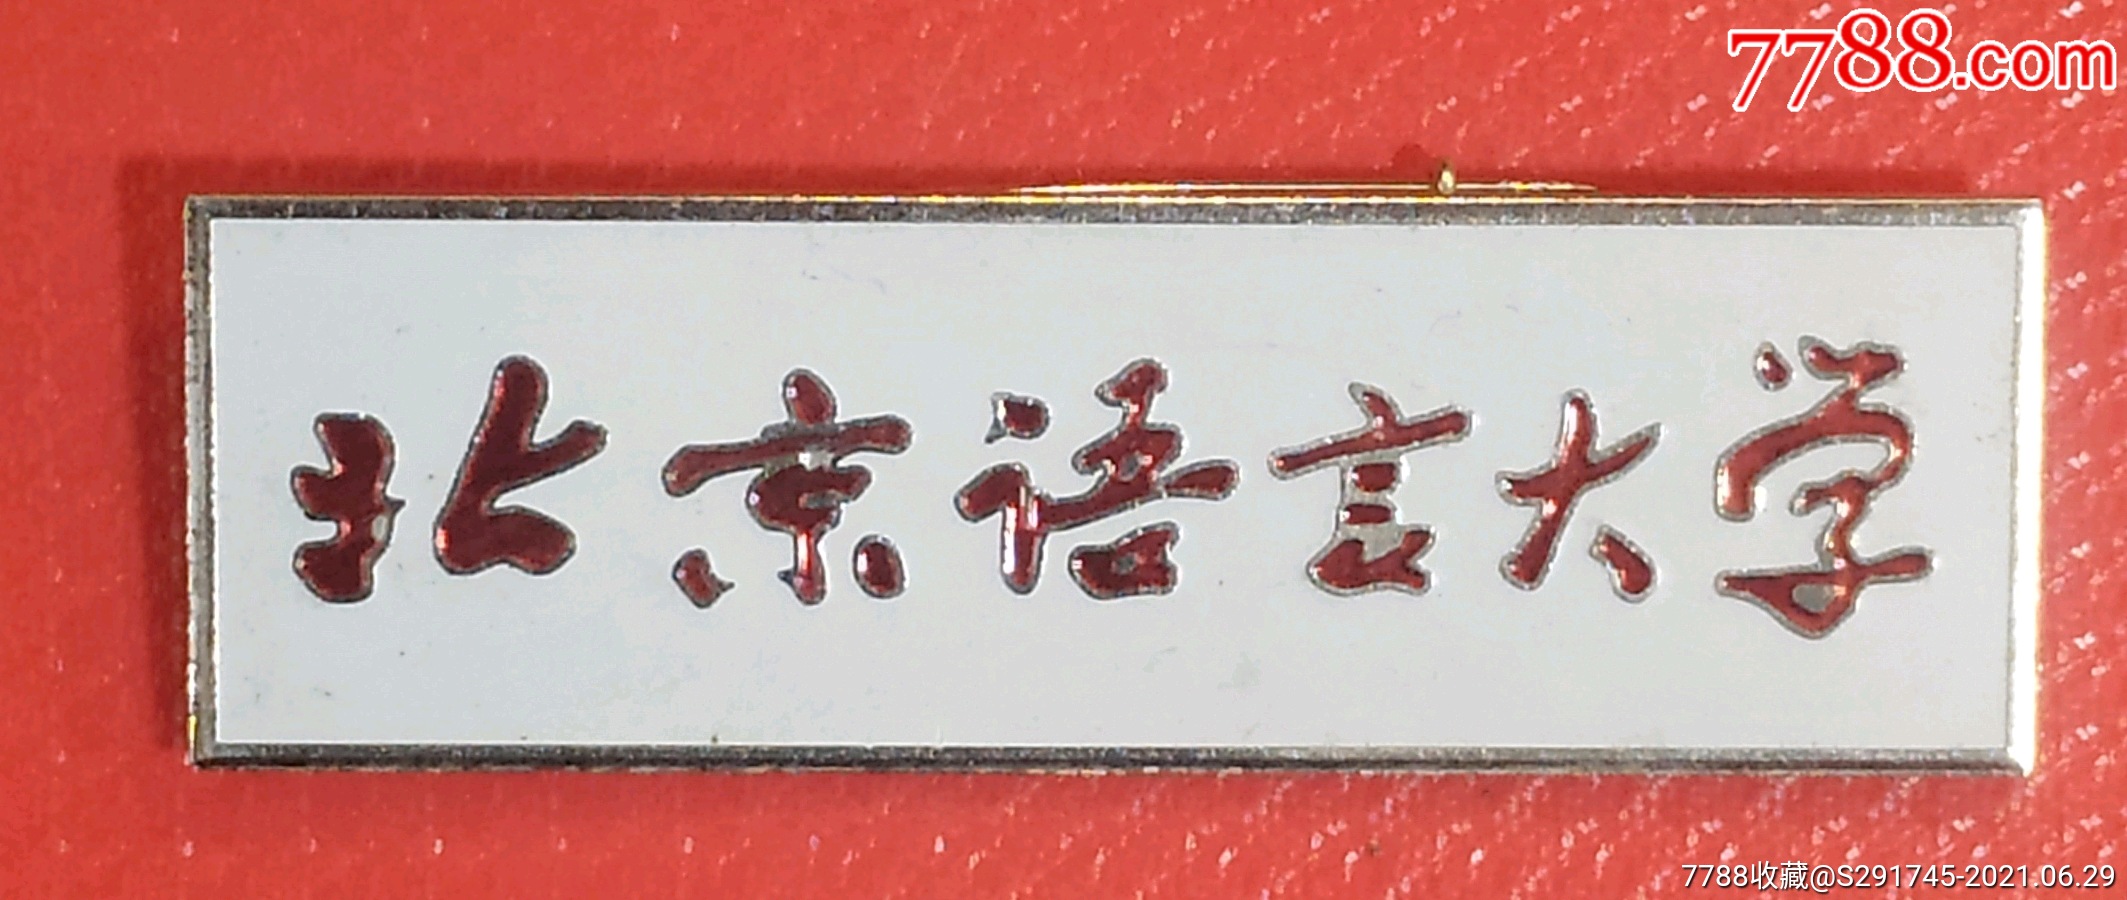 北京语言大学-校徽/毕业章-7788铜镜收藏